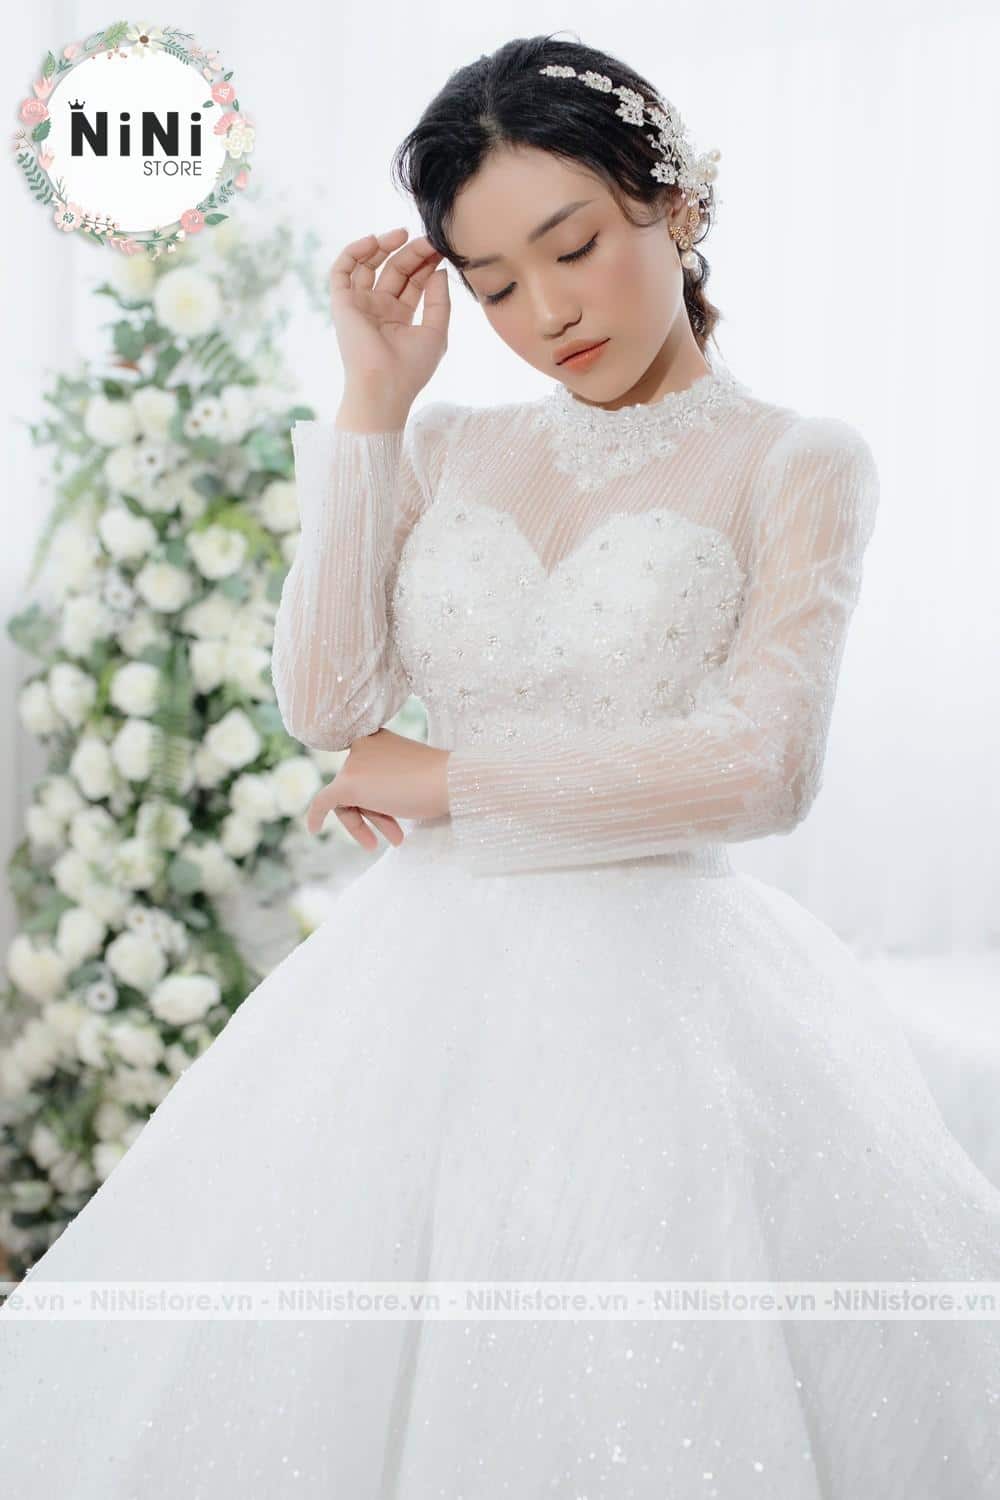 Top 10 mẫu đầm cô dâu đơn giản đẹp theo xu hướng